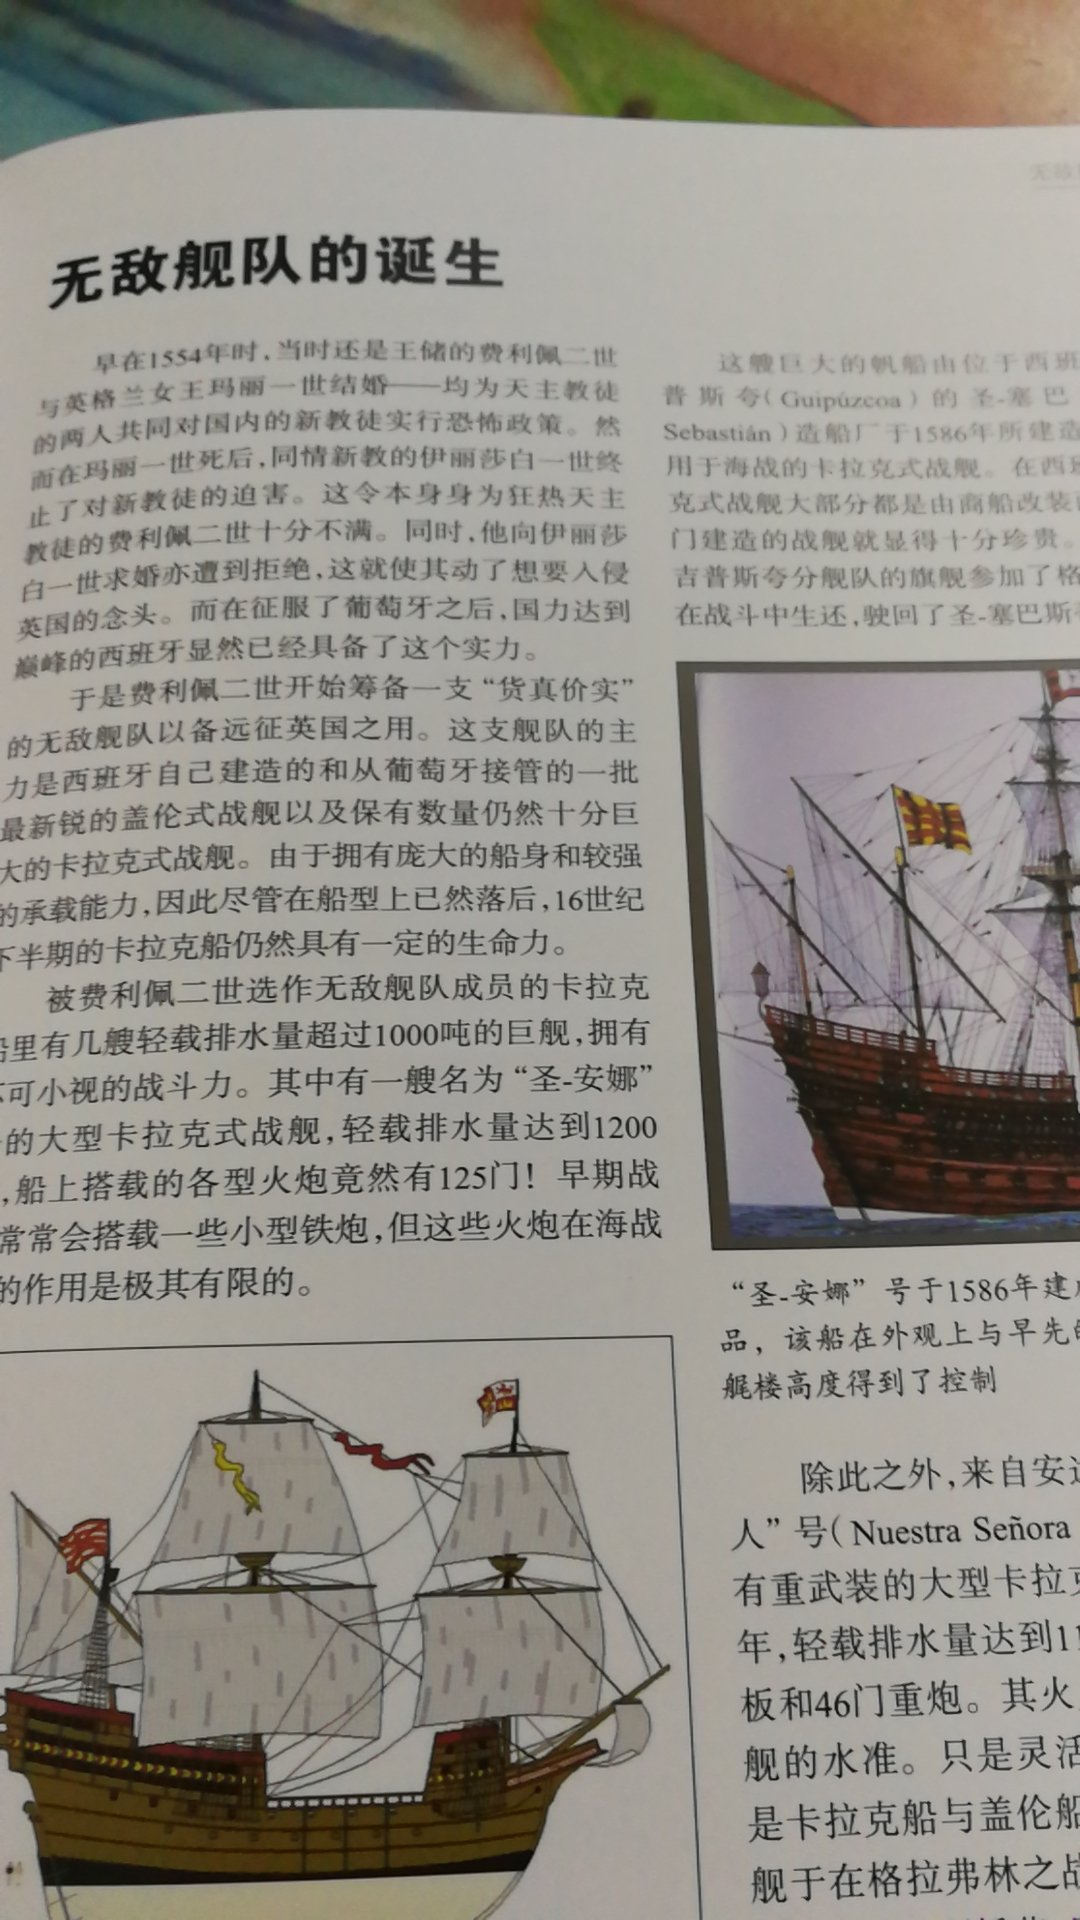 详细的介绍了风帆时代西班牙海军状况，是本好书